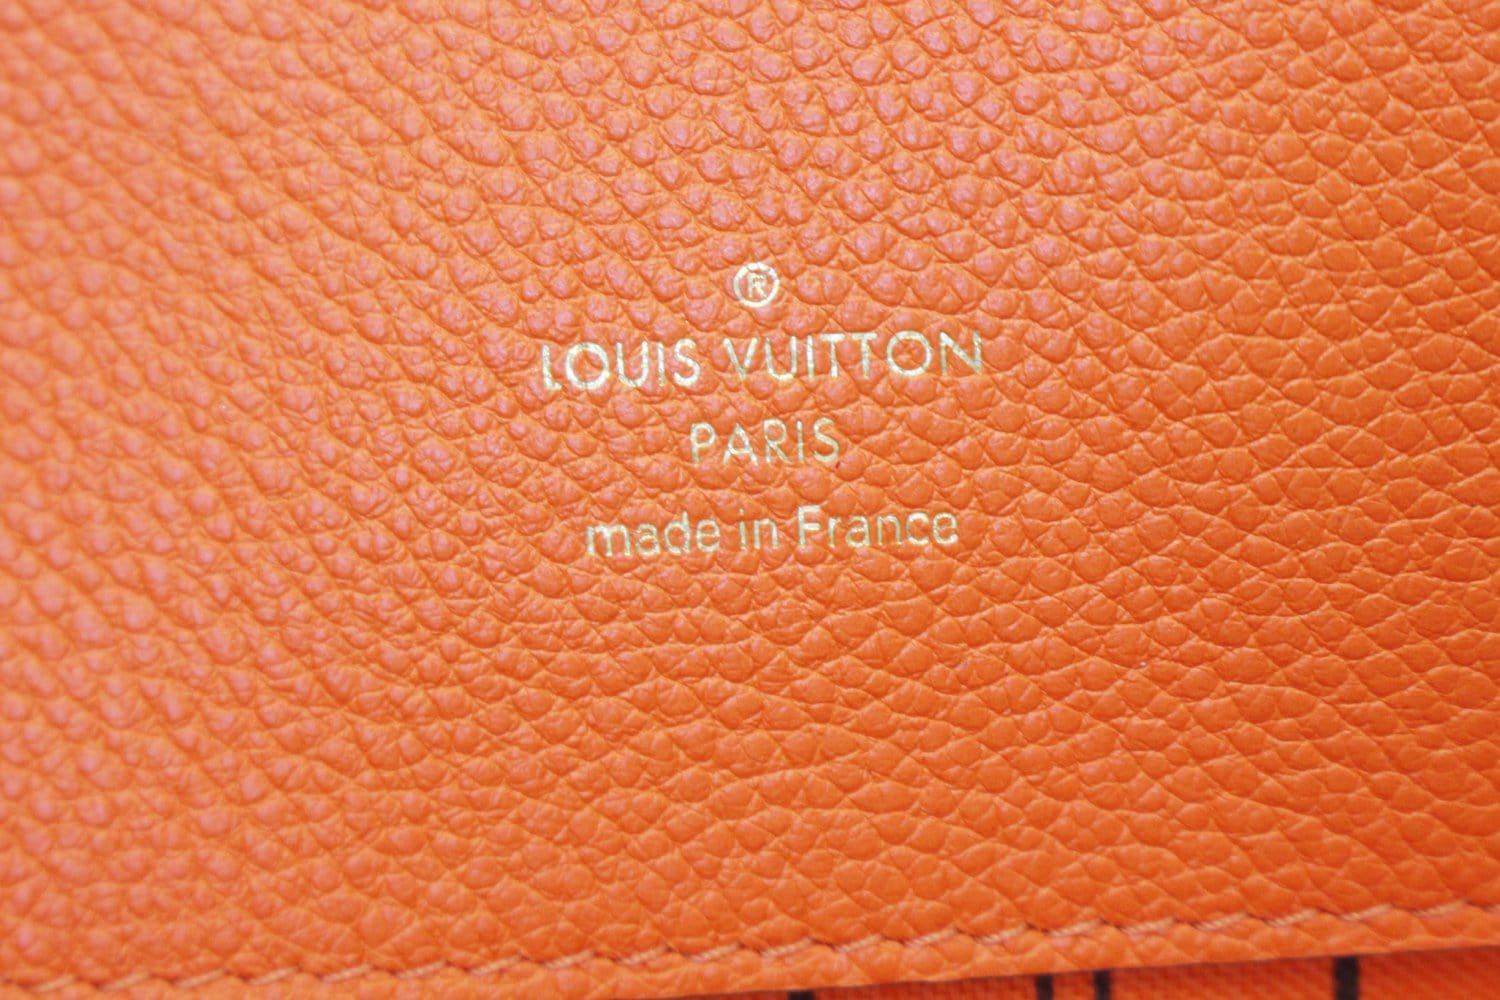 bag louis vuitton logo orange